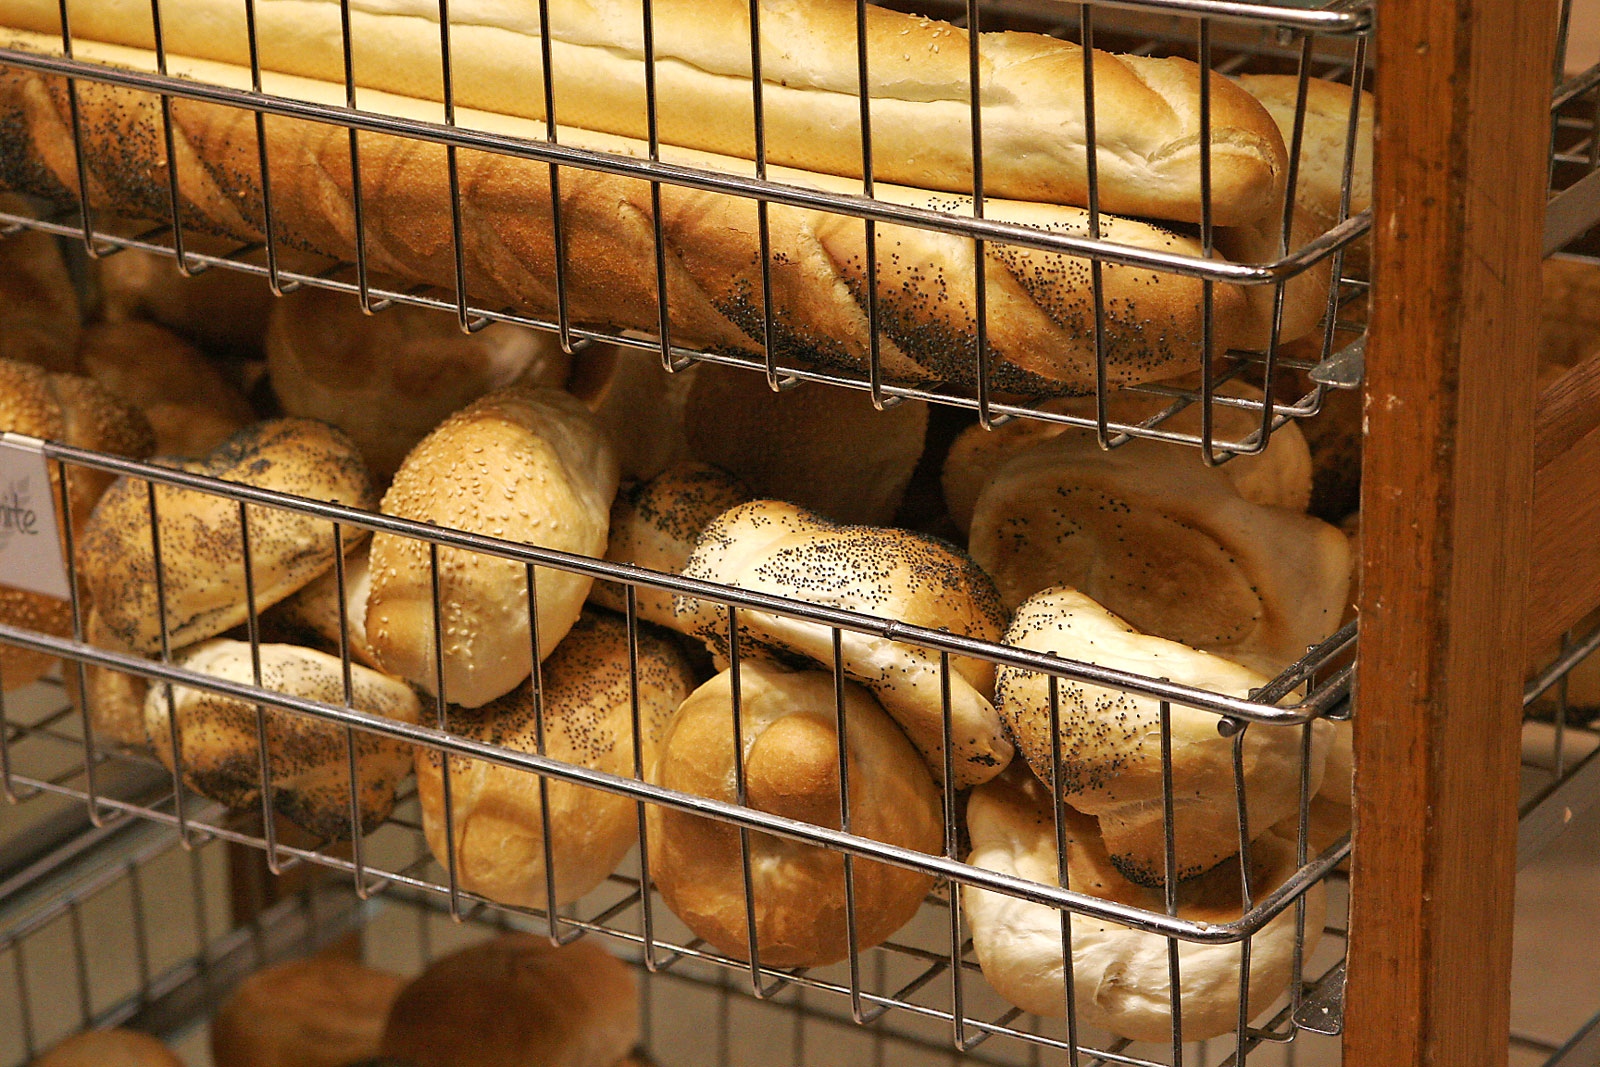 Bread_rolls_at_a_bakery.jpg